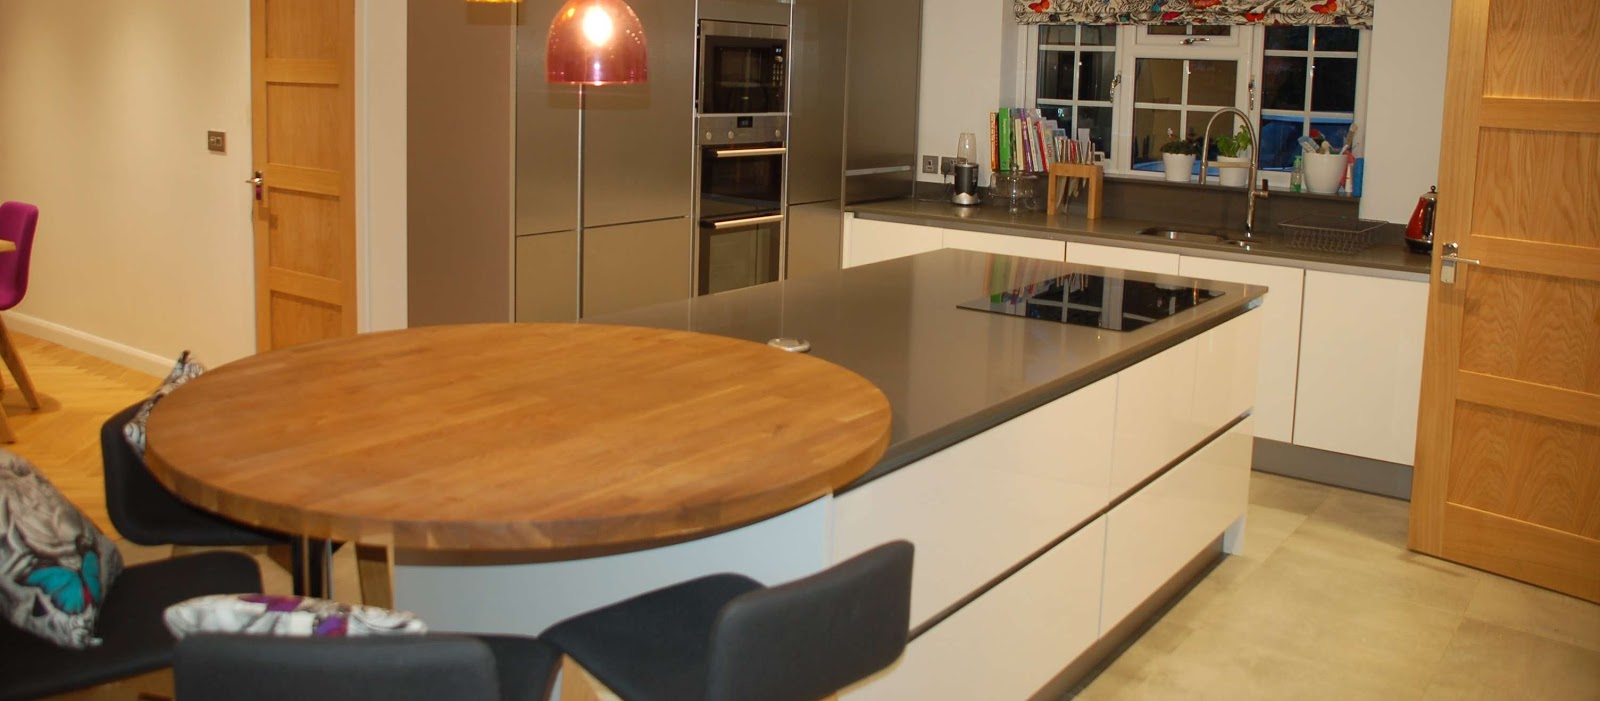 Kitchen Installations | Welford | Heart Kitchens